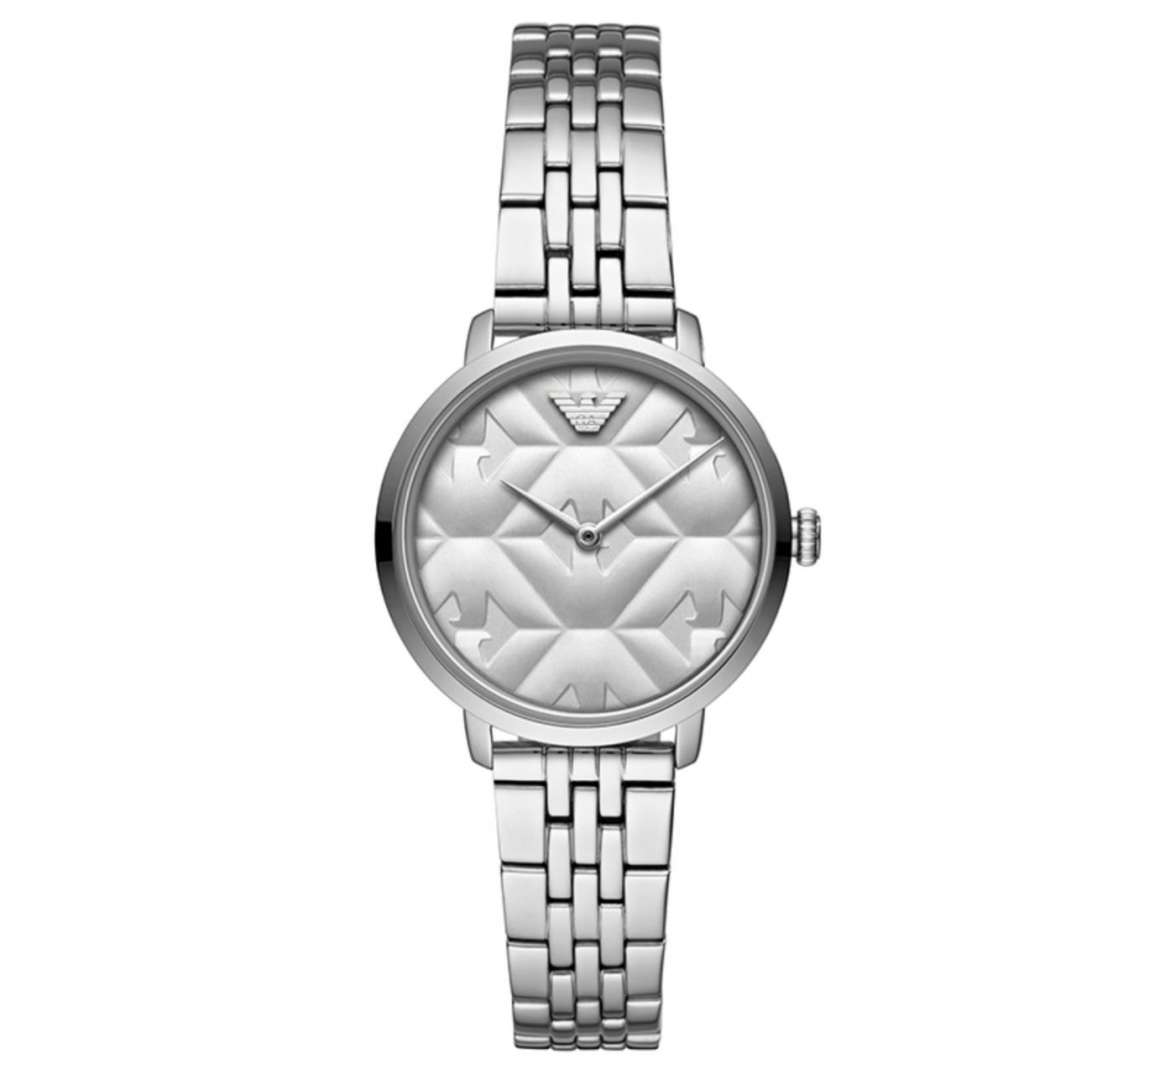 שעון יד אנלוגי לאישה emporio armani ar11213 אמפוריו ארמני